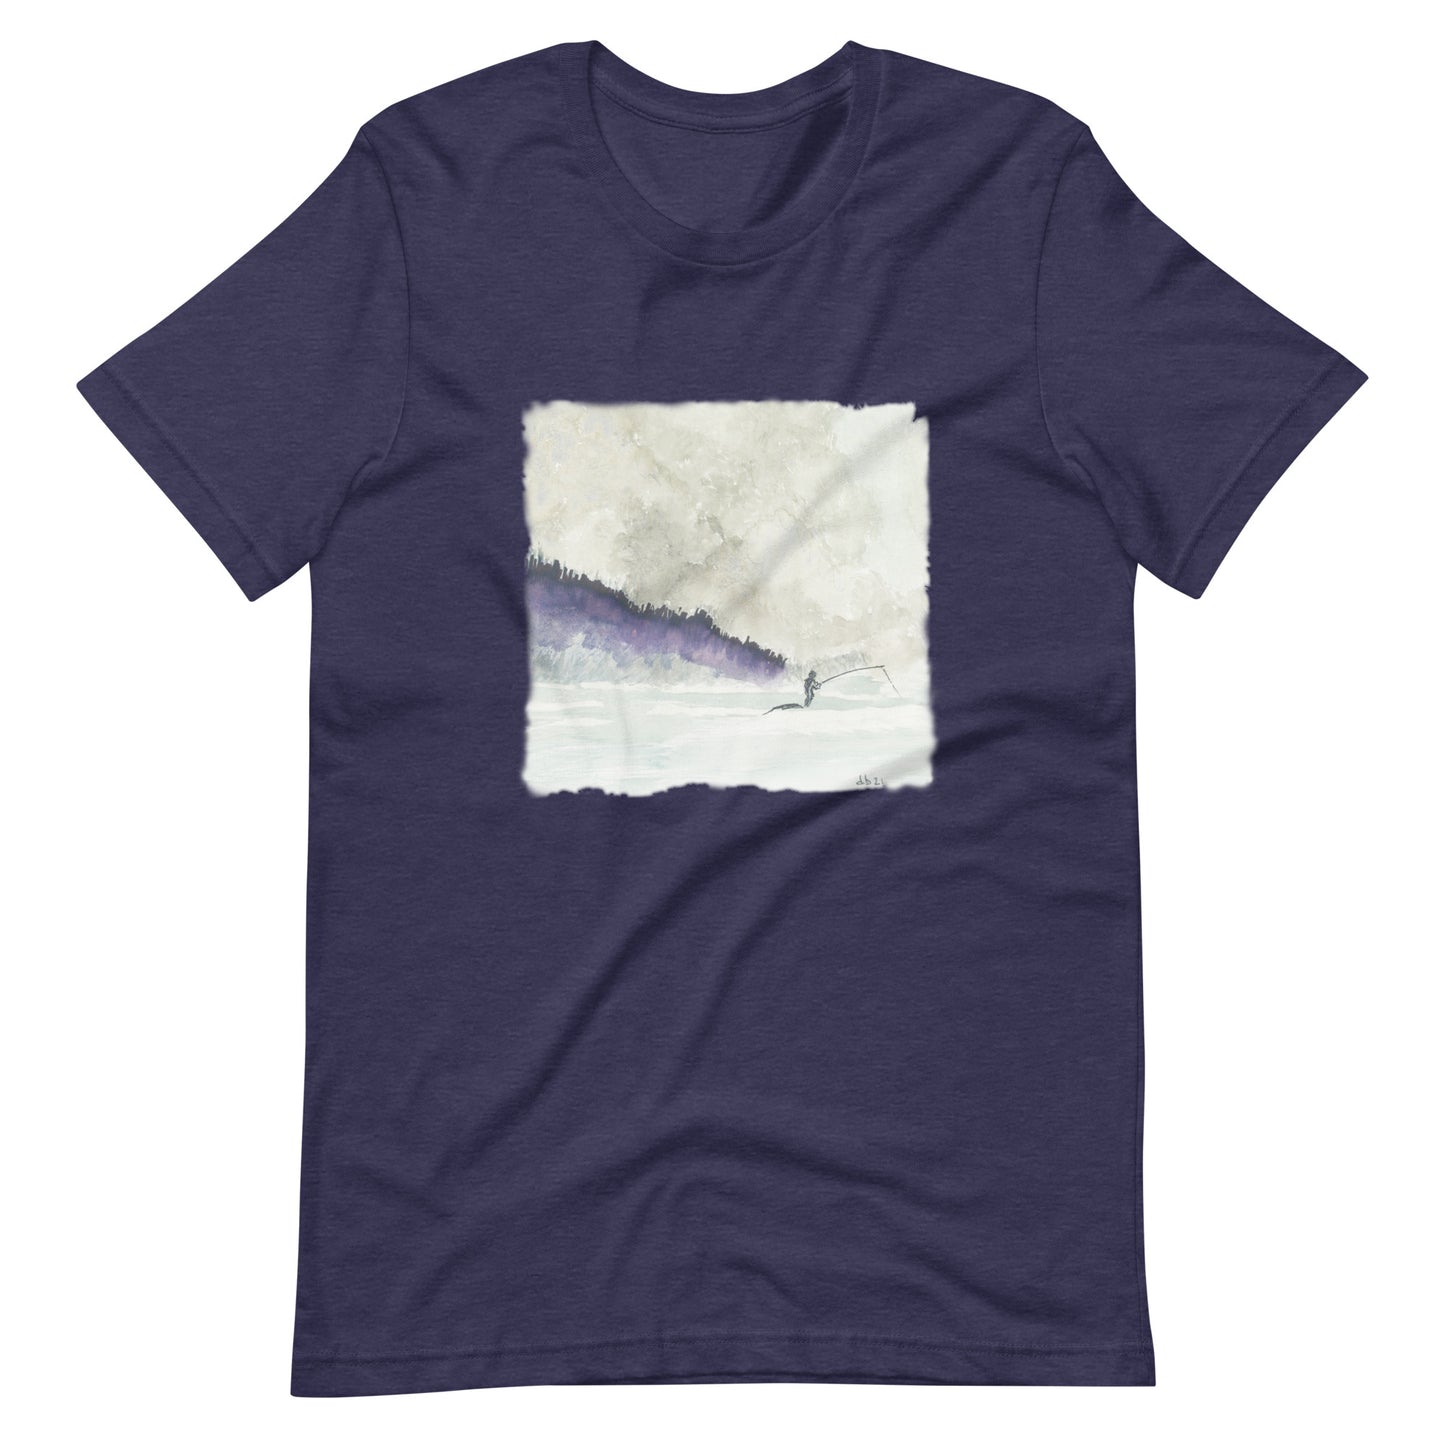 Dennis Berry Art 2 - Unisex t-shirt